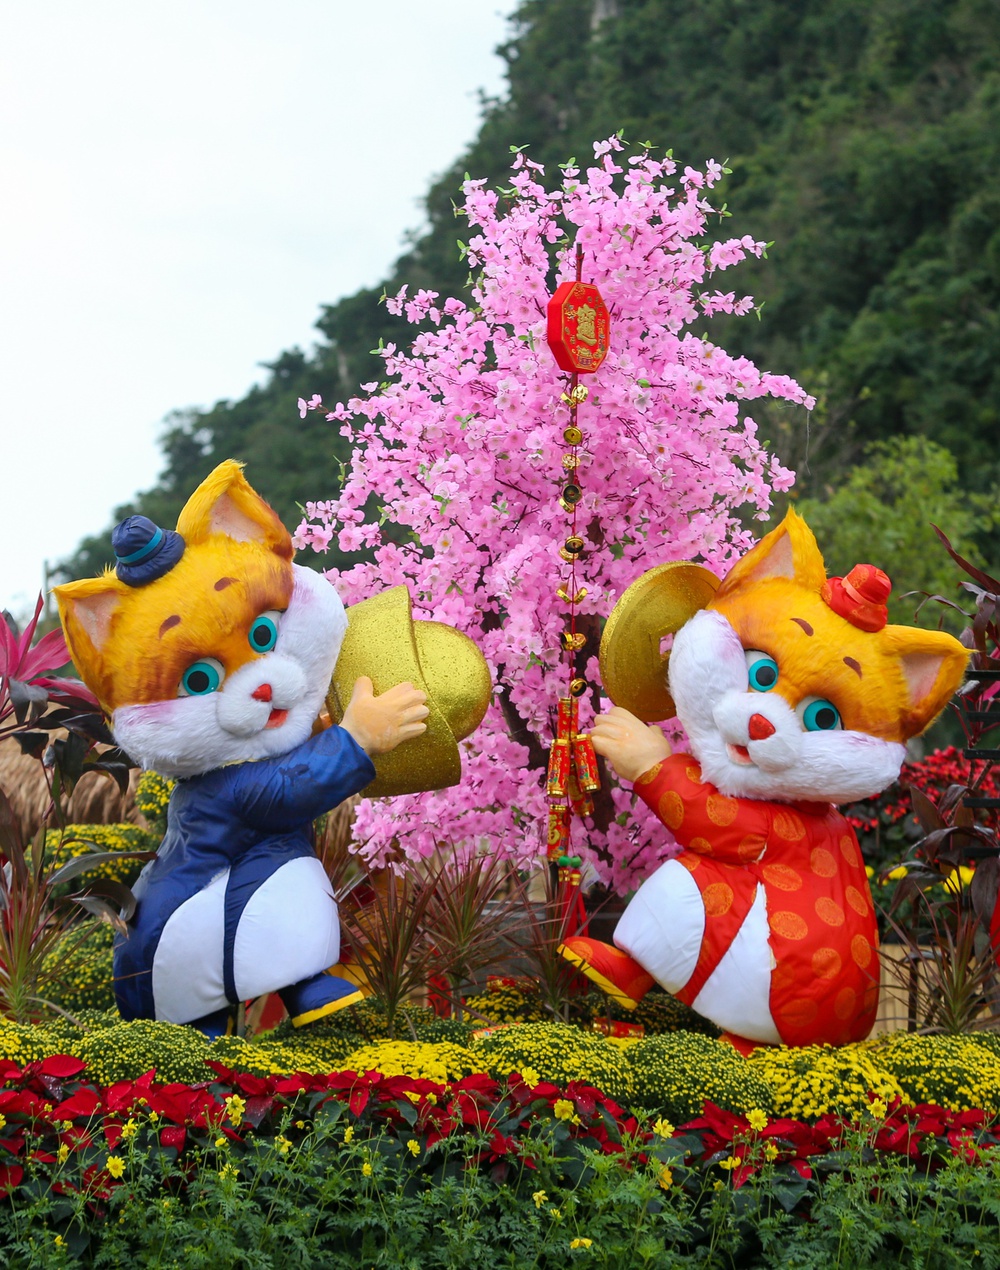 Lộ diện đàn linh vật mèo đủ biểu cảm tại đường hoa Xuân Đà Nẵng - ảnh 9